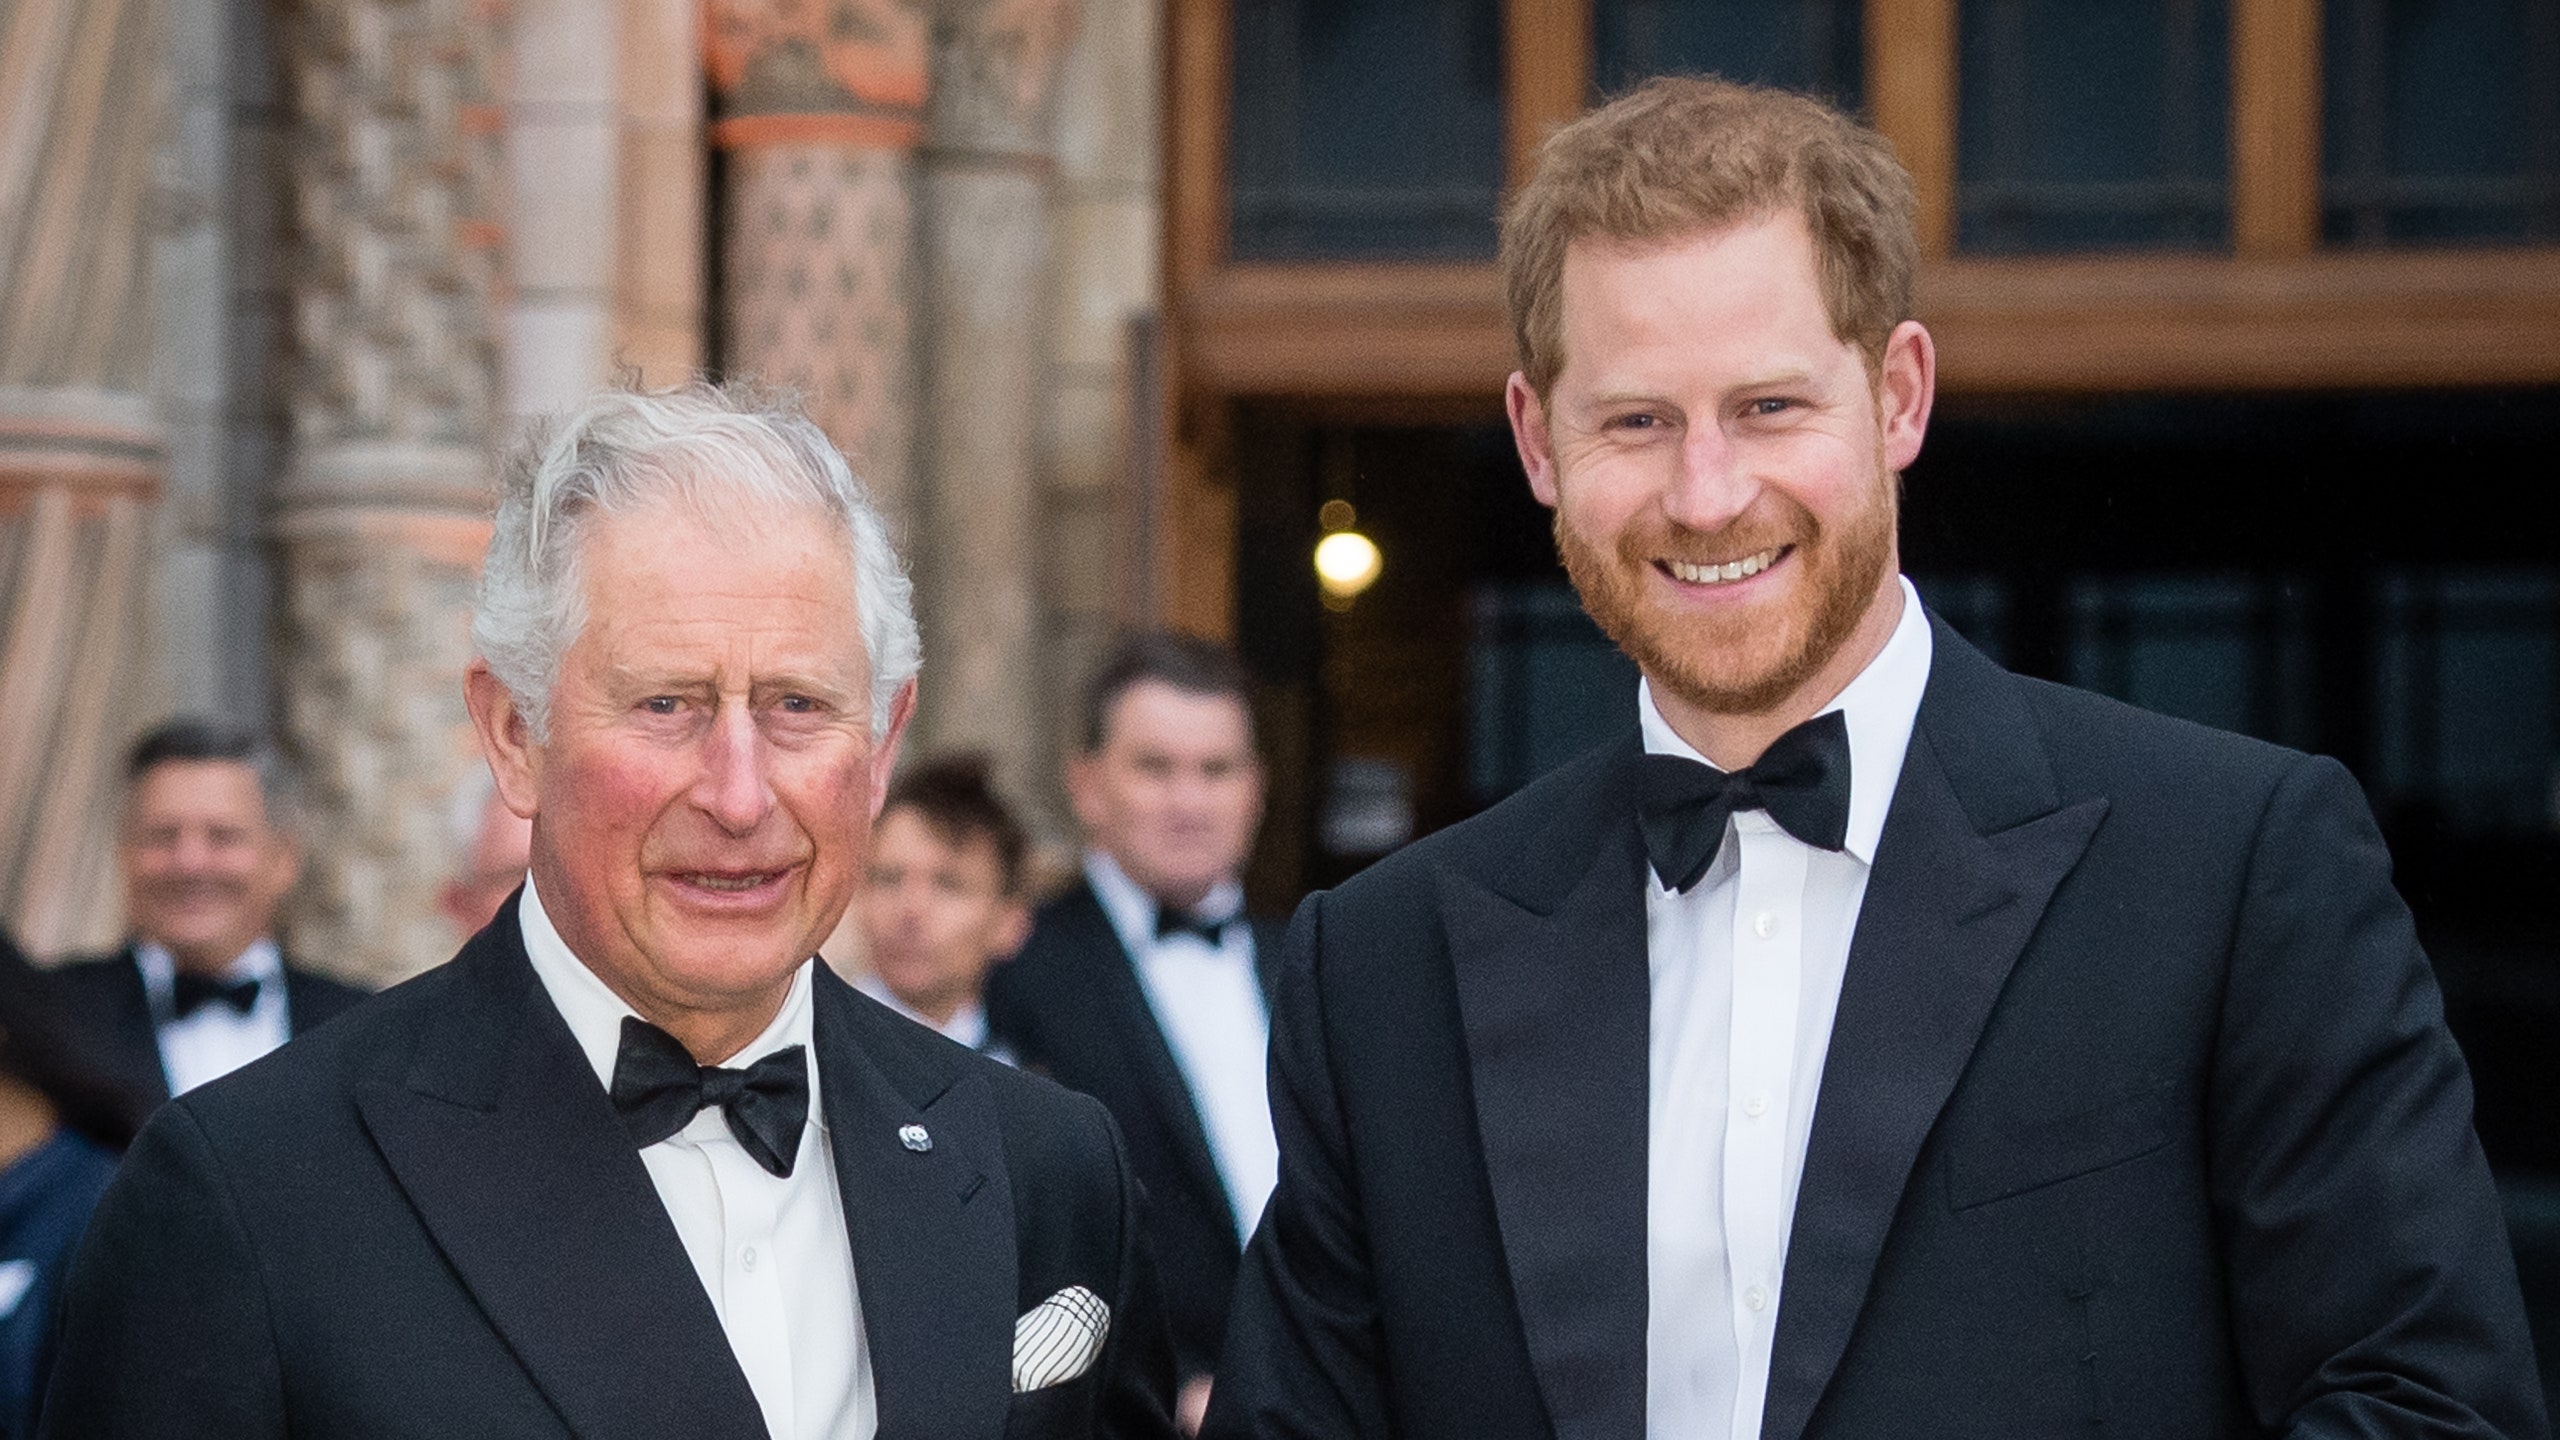 Le Prince Charles rend hommage au prince Harry... et provoque la colère des internautes !